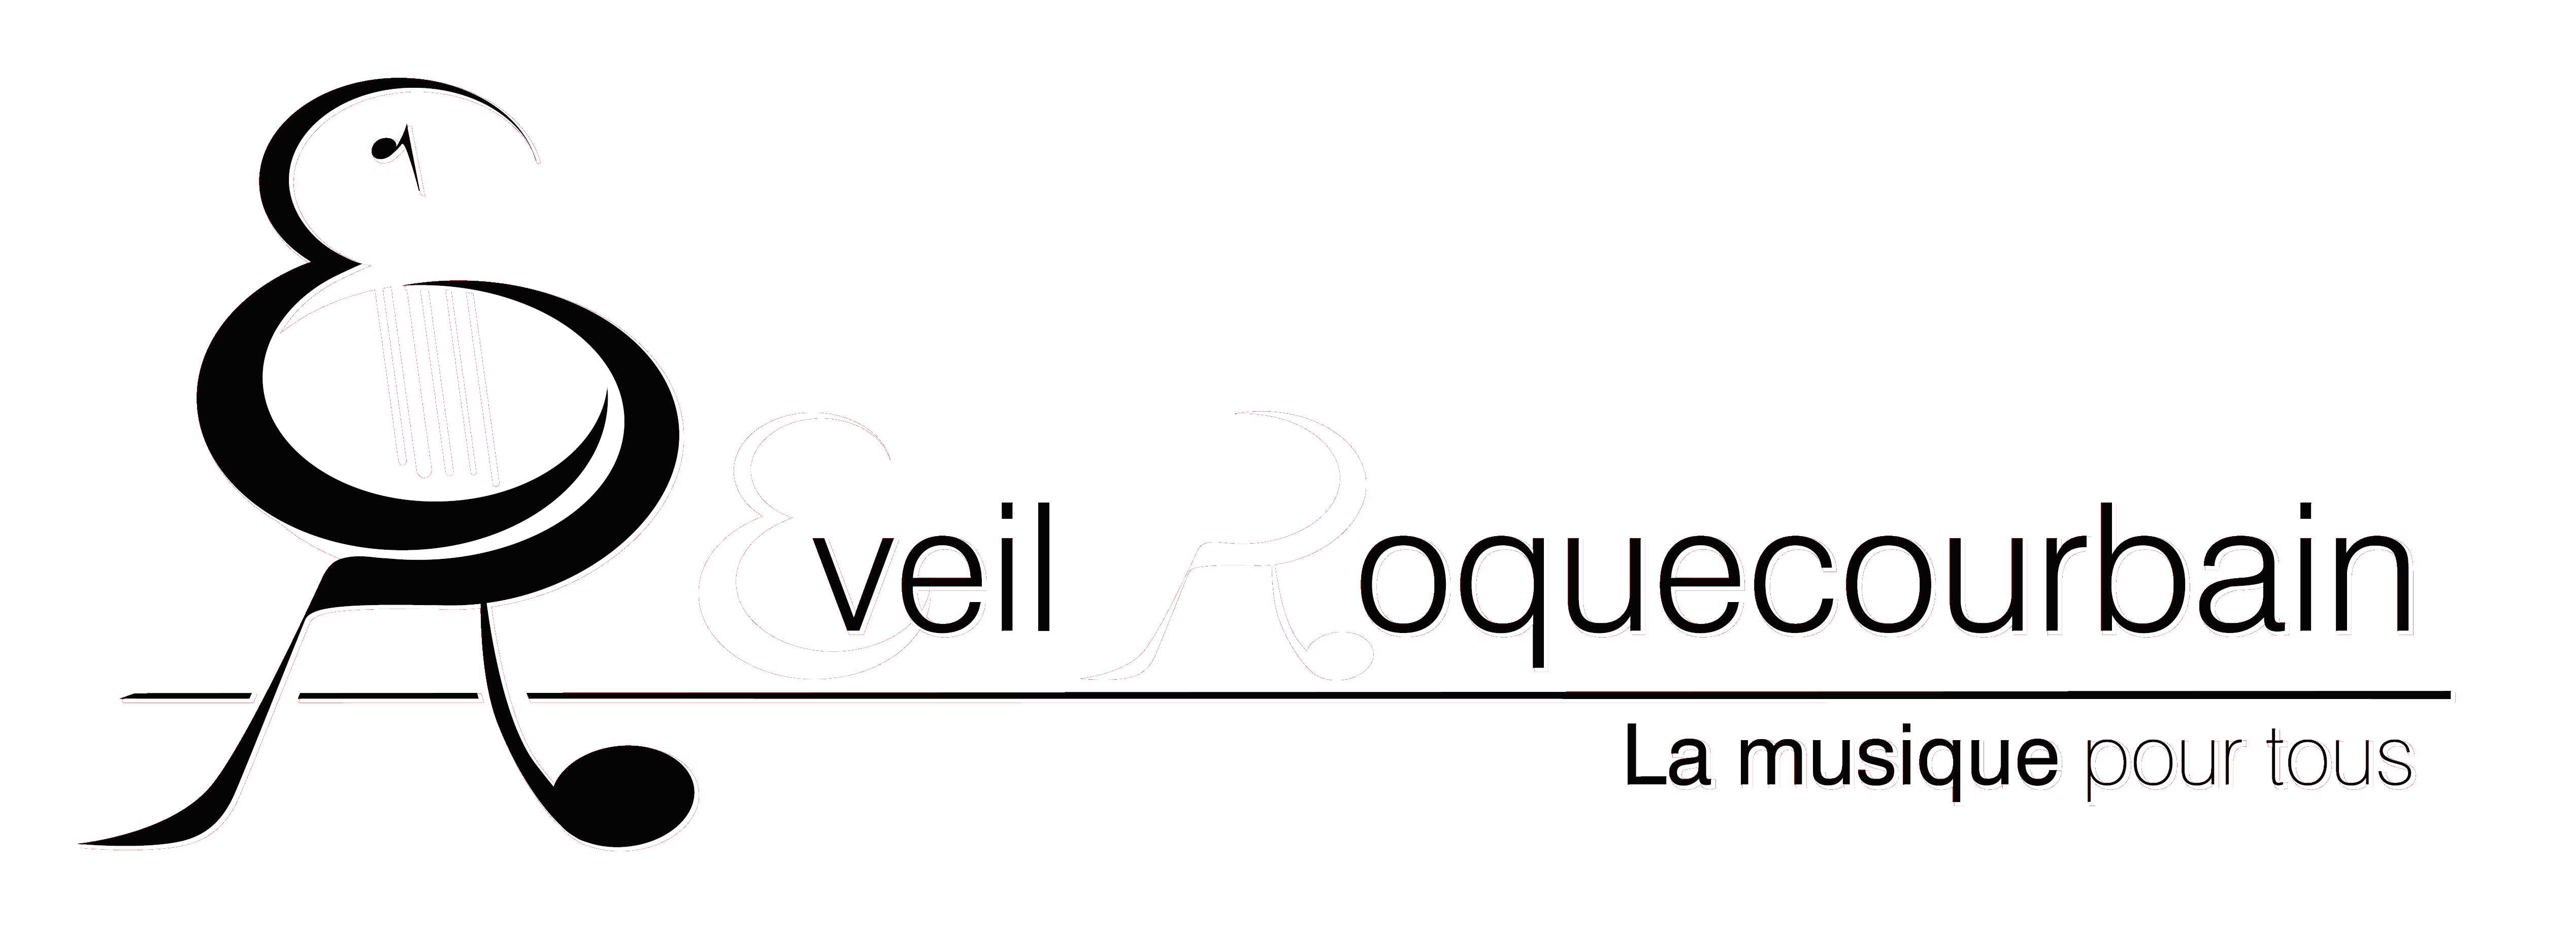 Logo de l'Eveil Roquecourbain